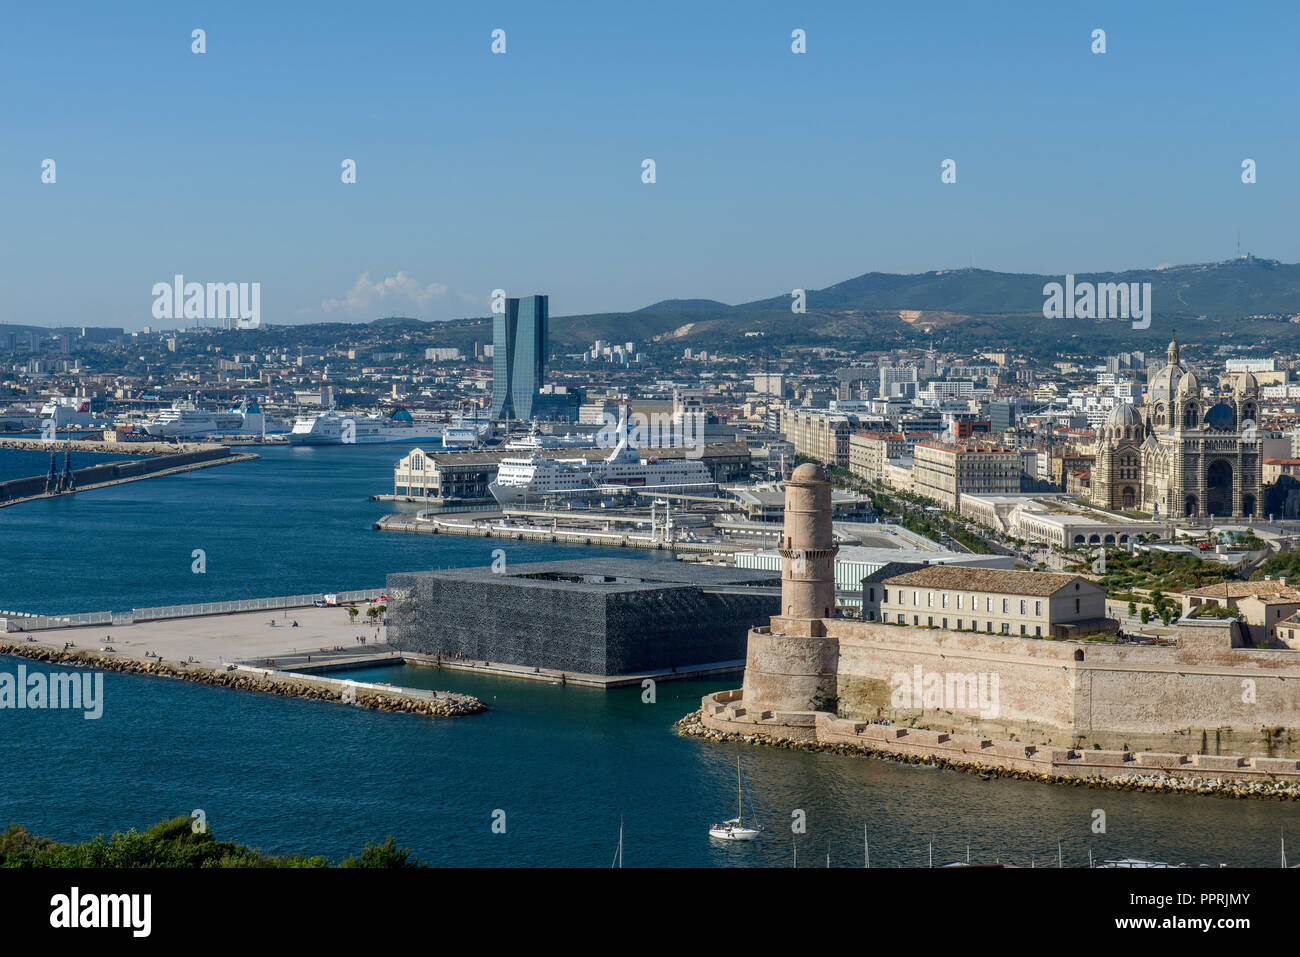 Marsiglia (sud-est della Francia): panoramica della città con la torre di Saint-Jean ("Tour Saint Jean') e il MUCEM (Musee des civiltà de l'Europ Foto Stock